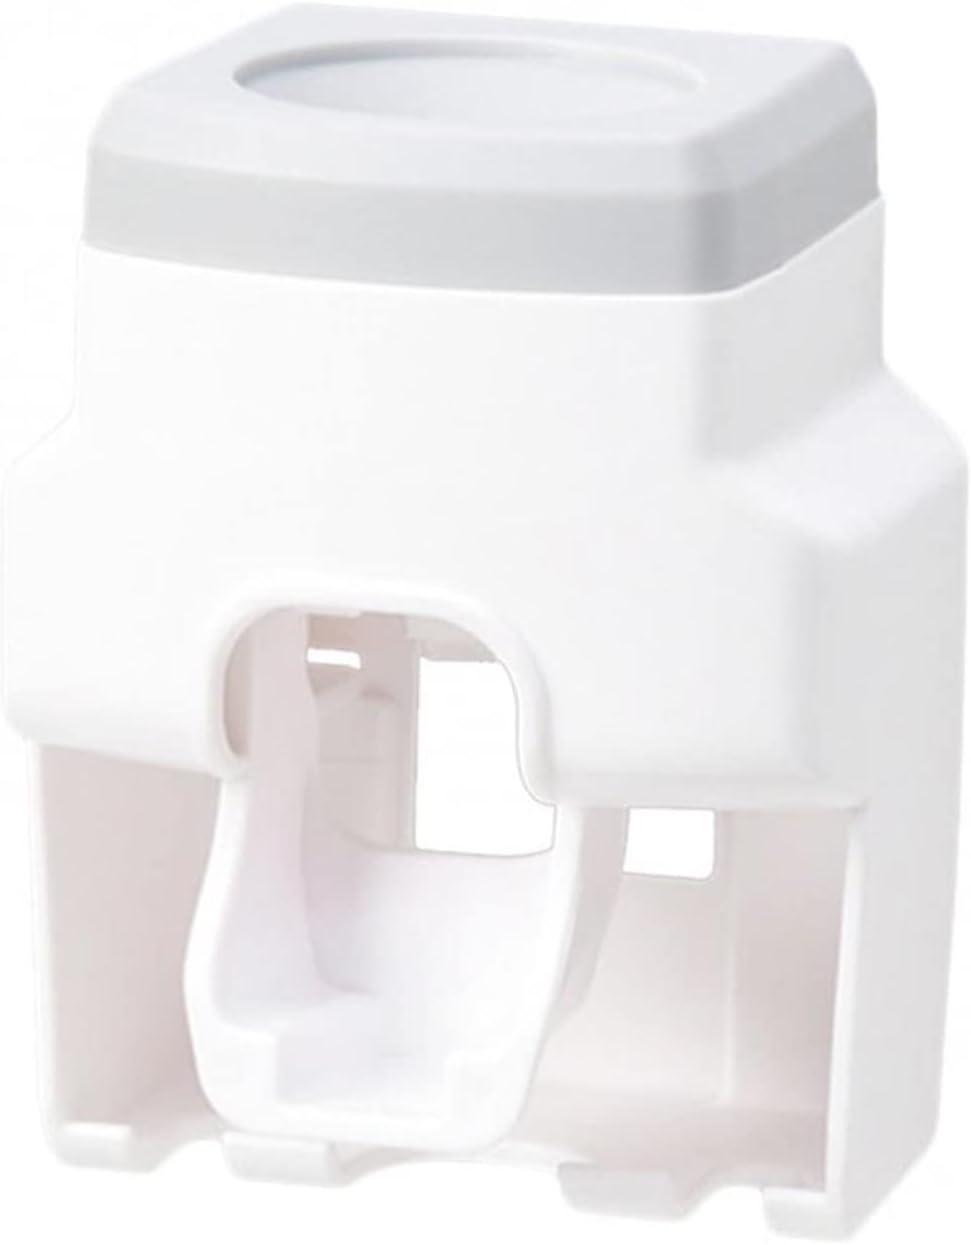 Dispensador automático de pasta dental – Shoppeflex